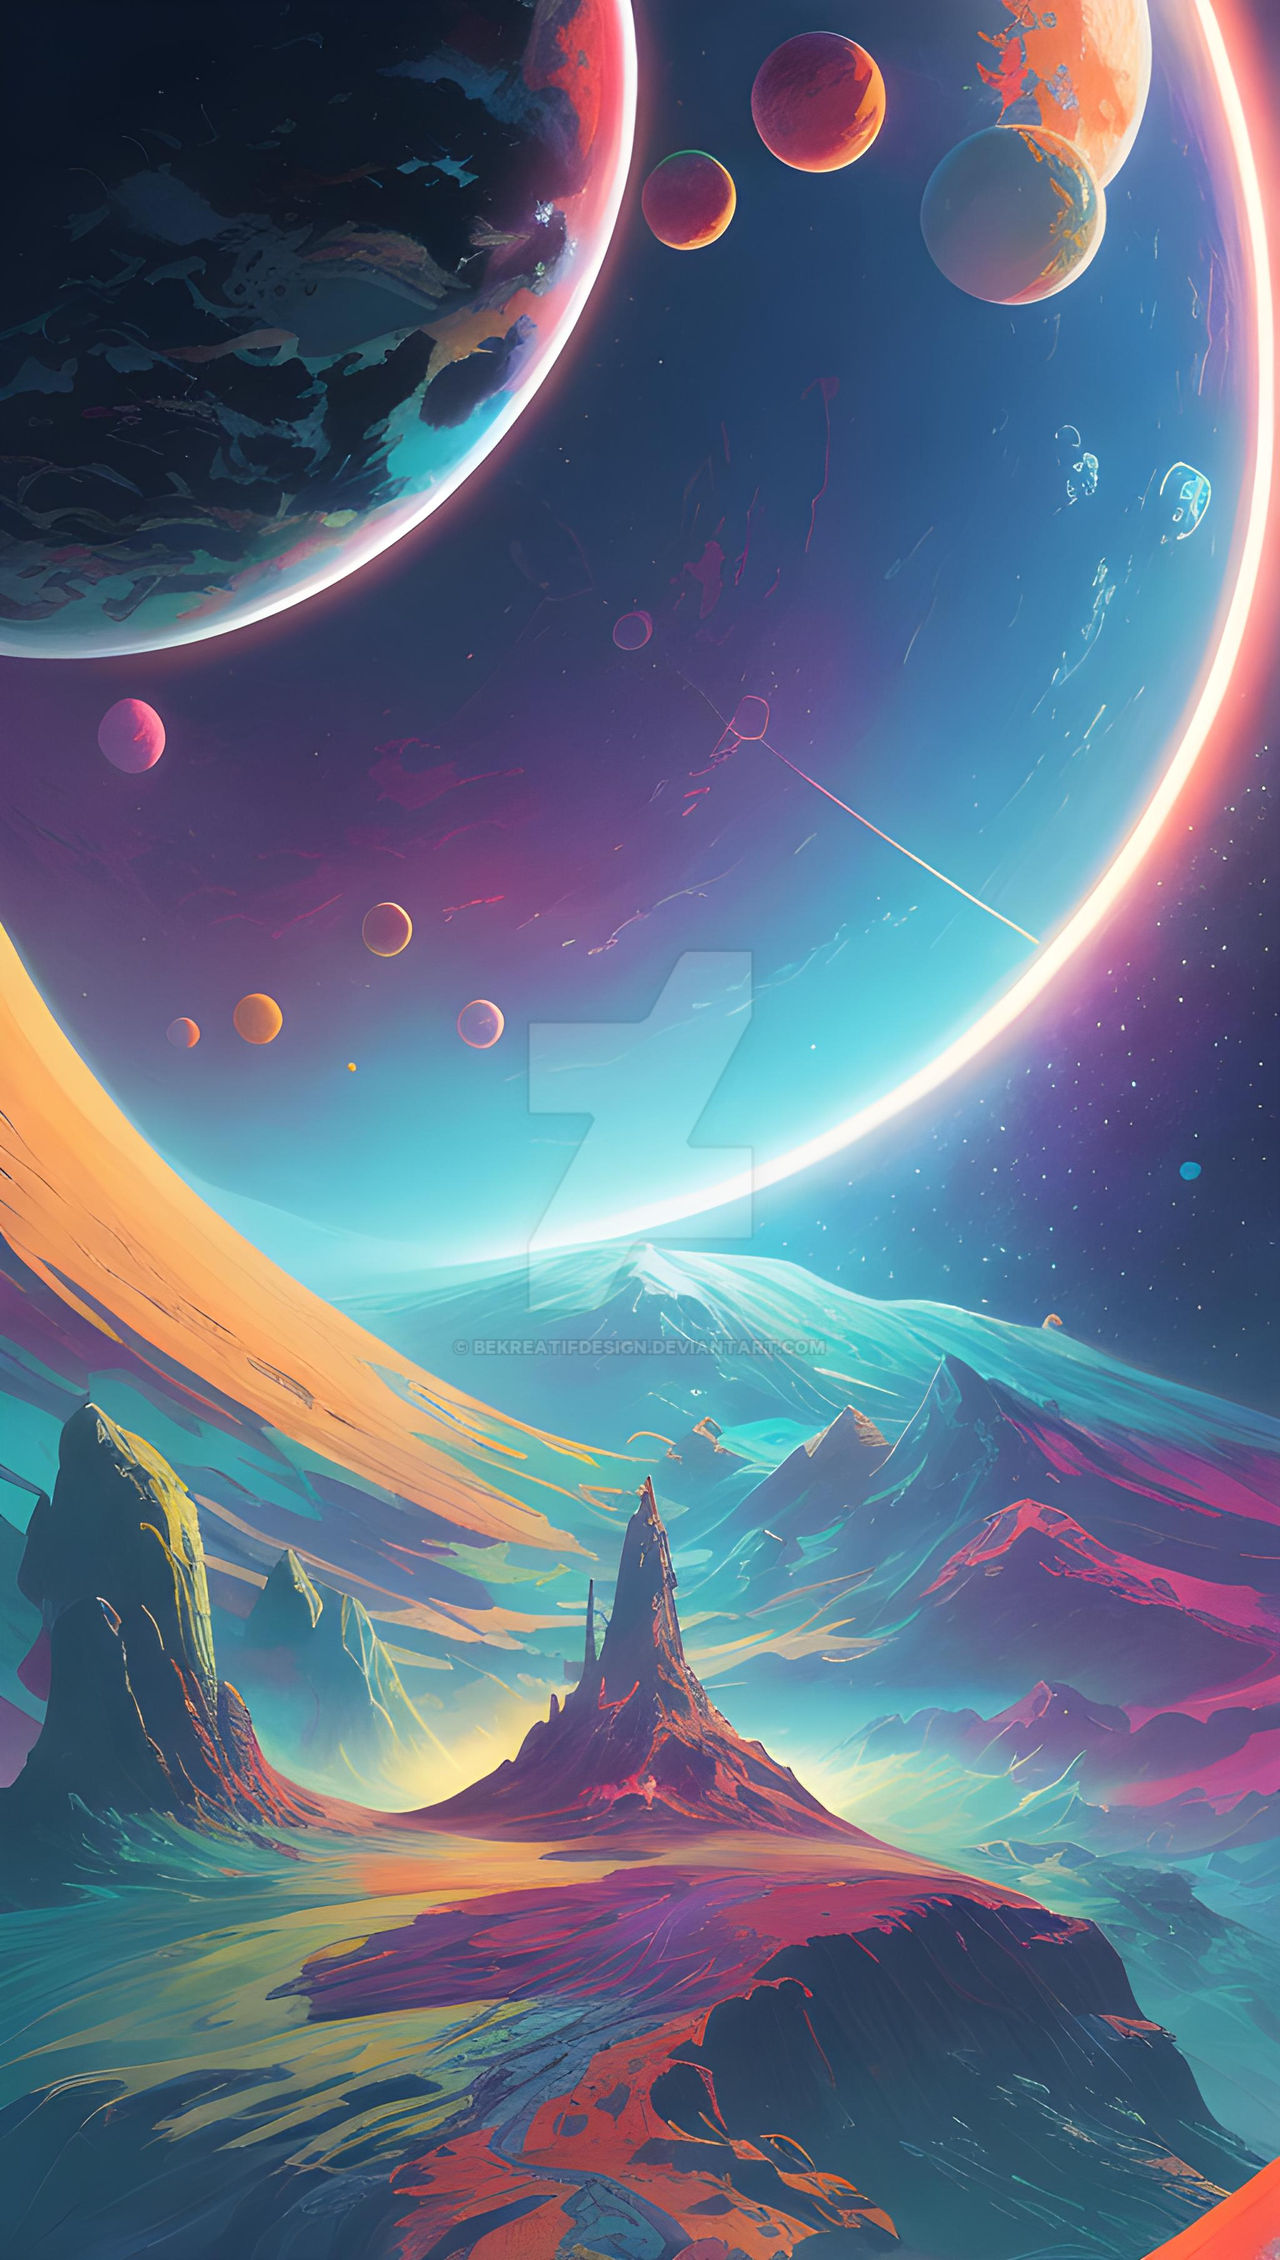 Wallpaper iphone cyberpunk planet cosmos by bekreatifdesign on DeviantArt